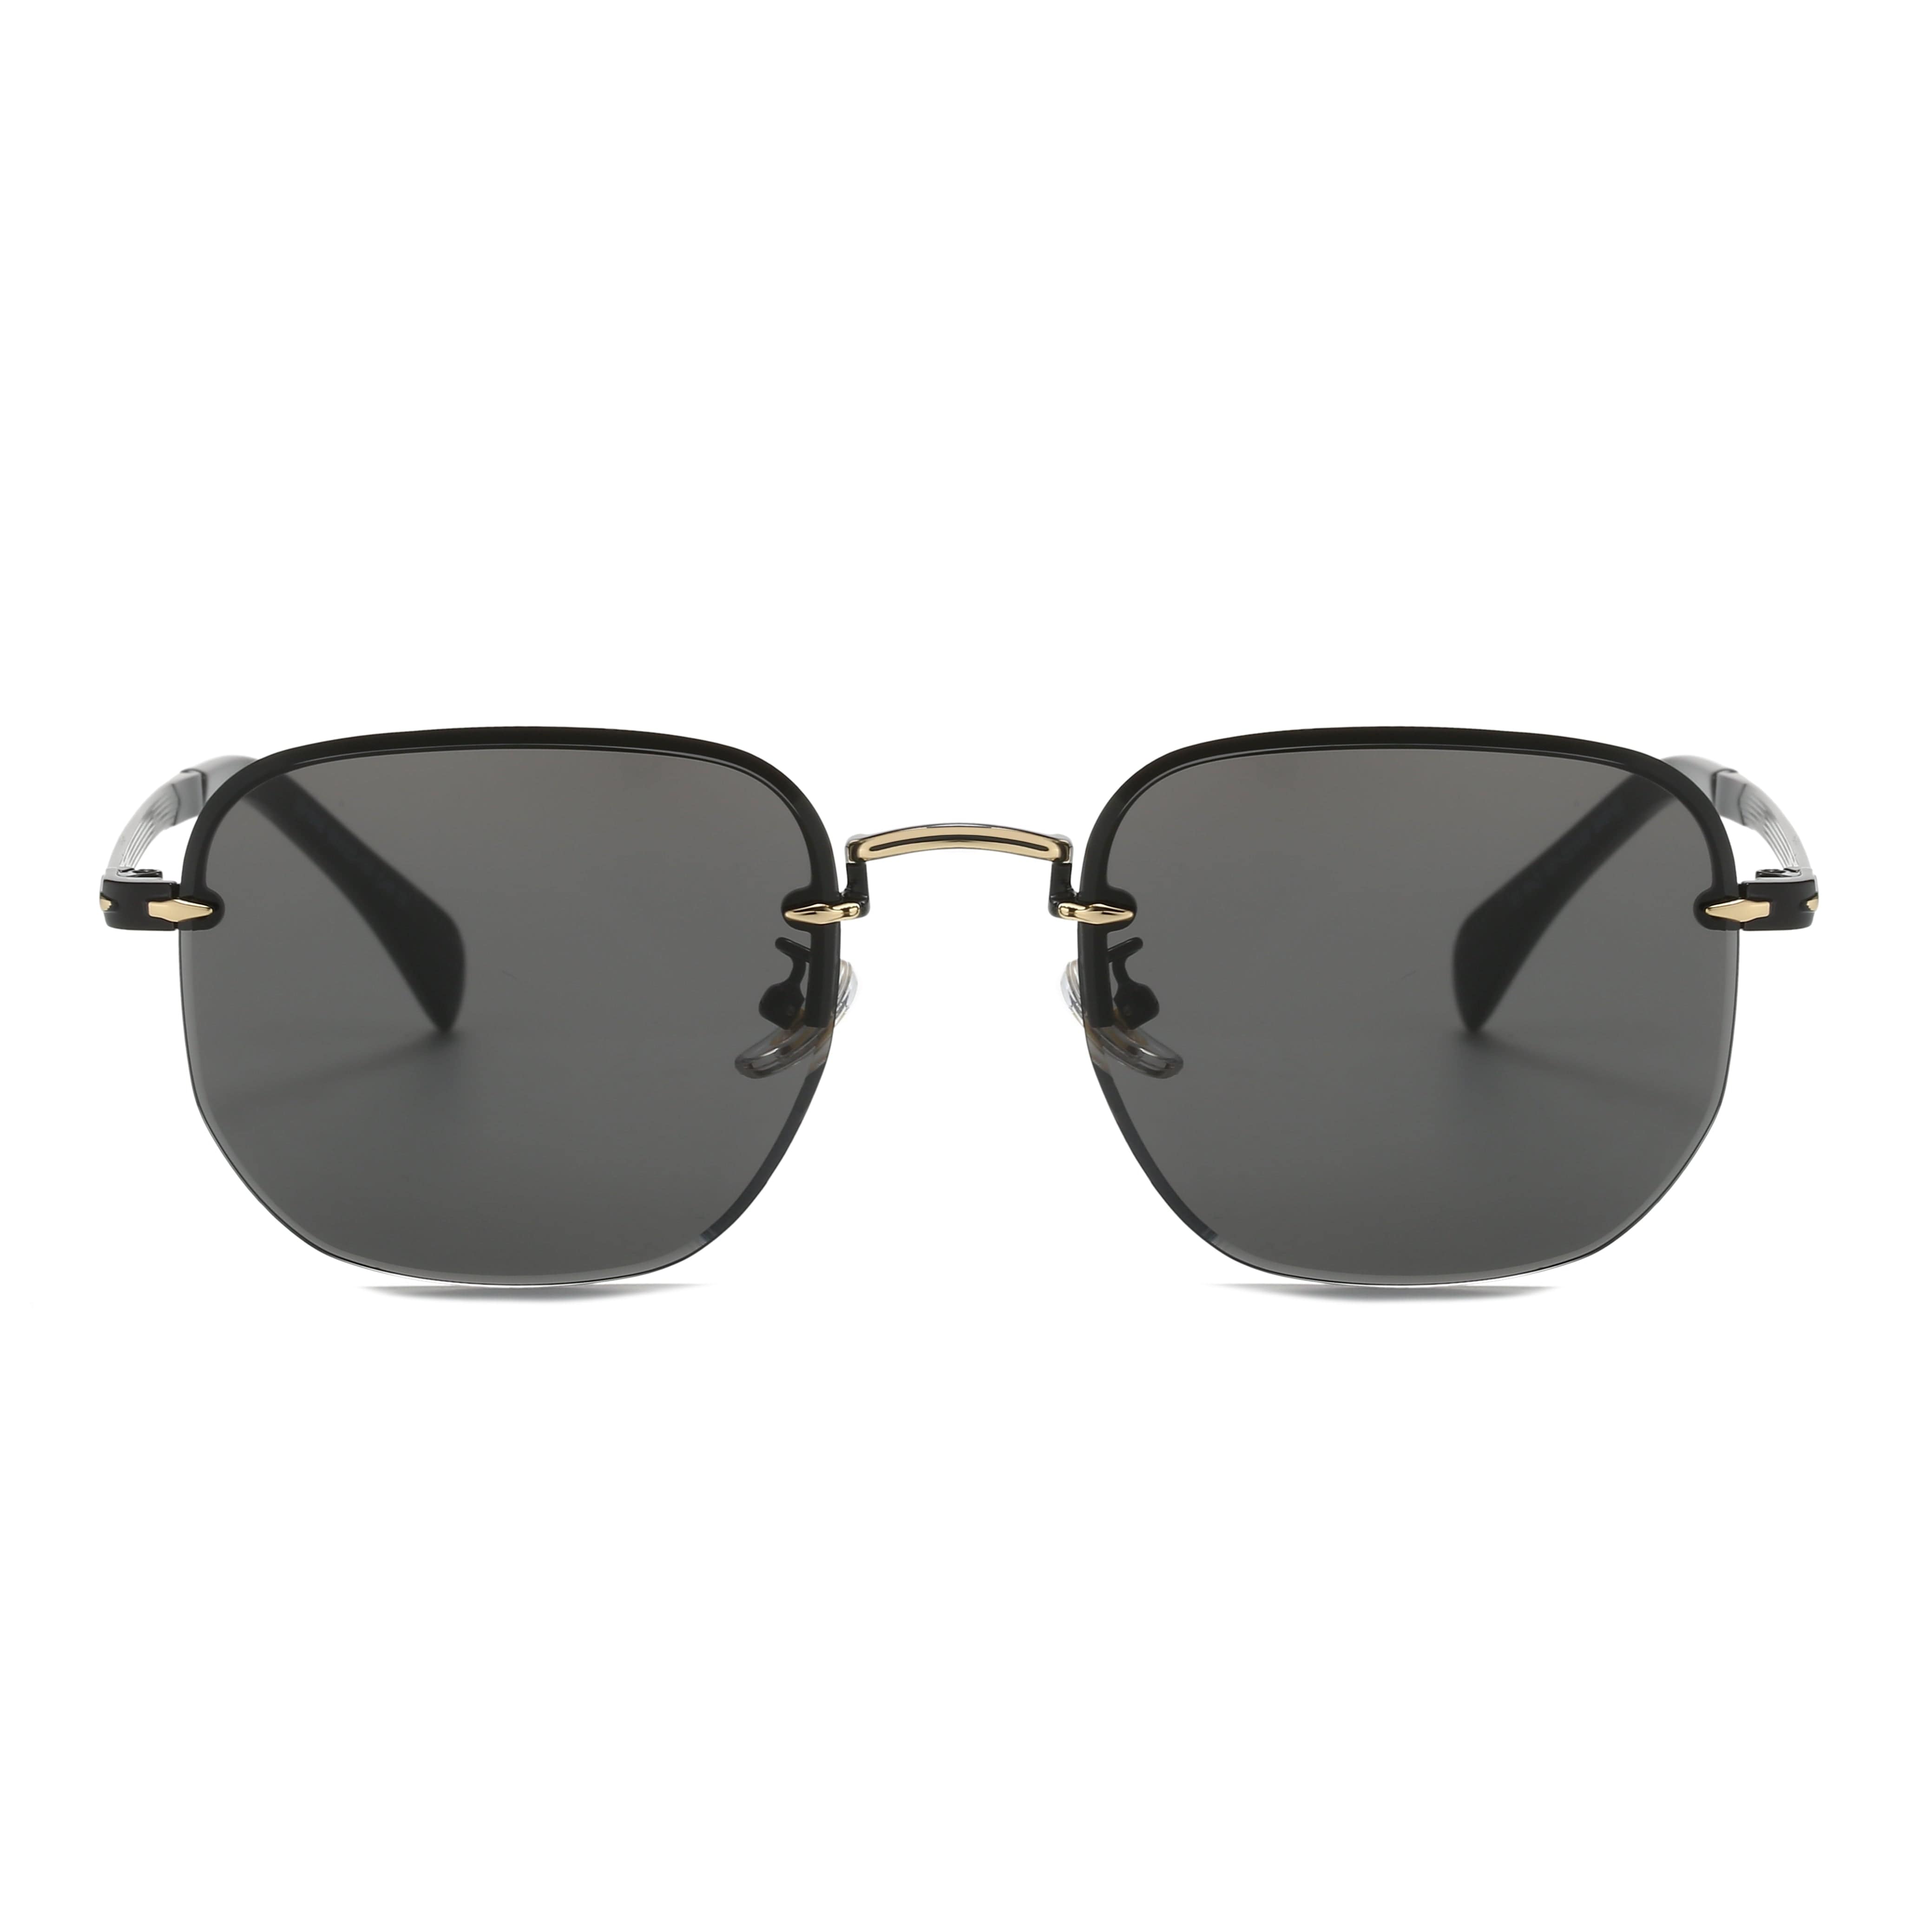 GIUSTIZIERI VECCHI Sunglasses Small / Black LavishLuster Uno